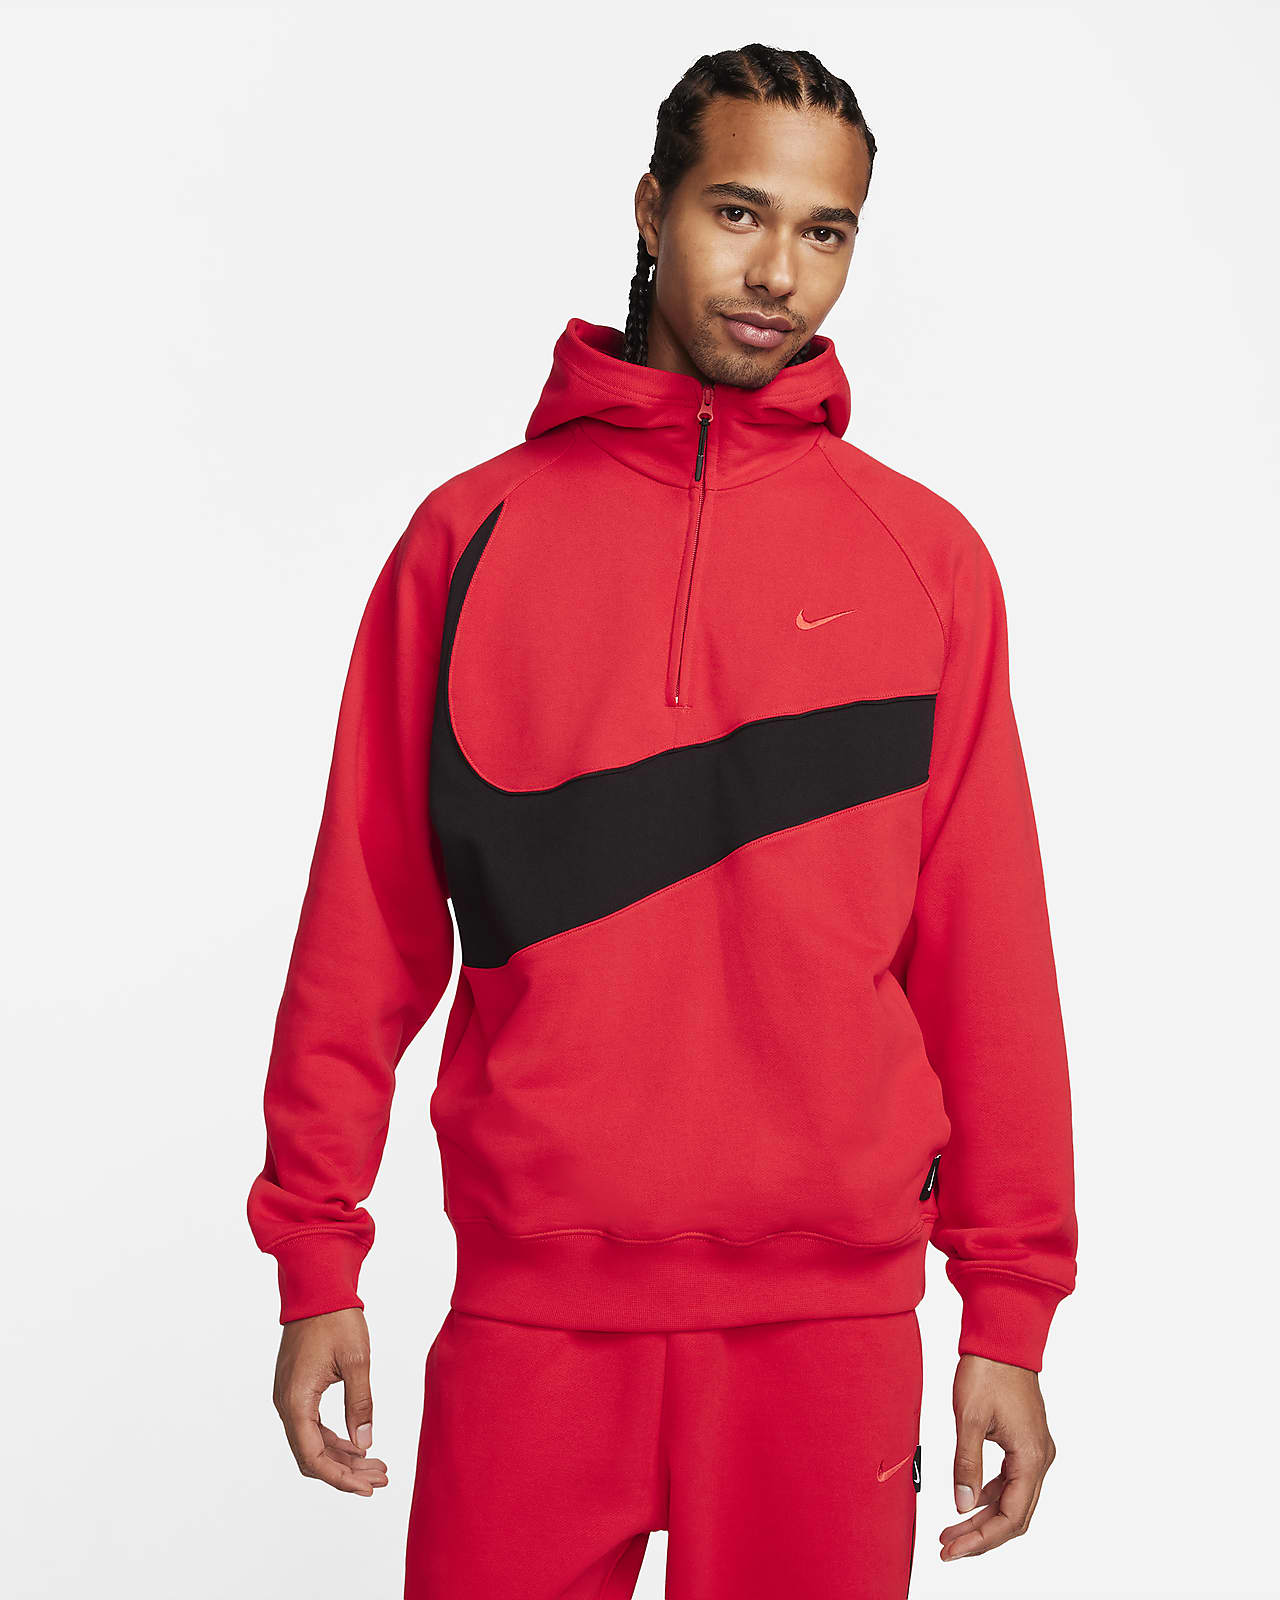 Sudadera Nike con cierre para hombre